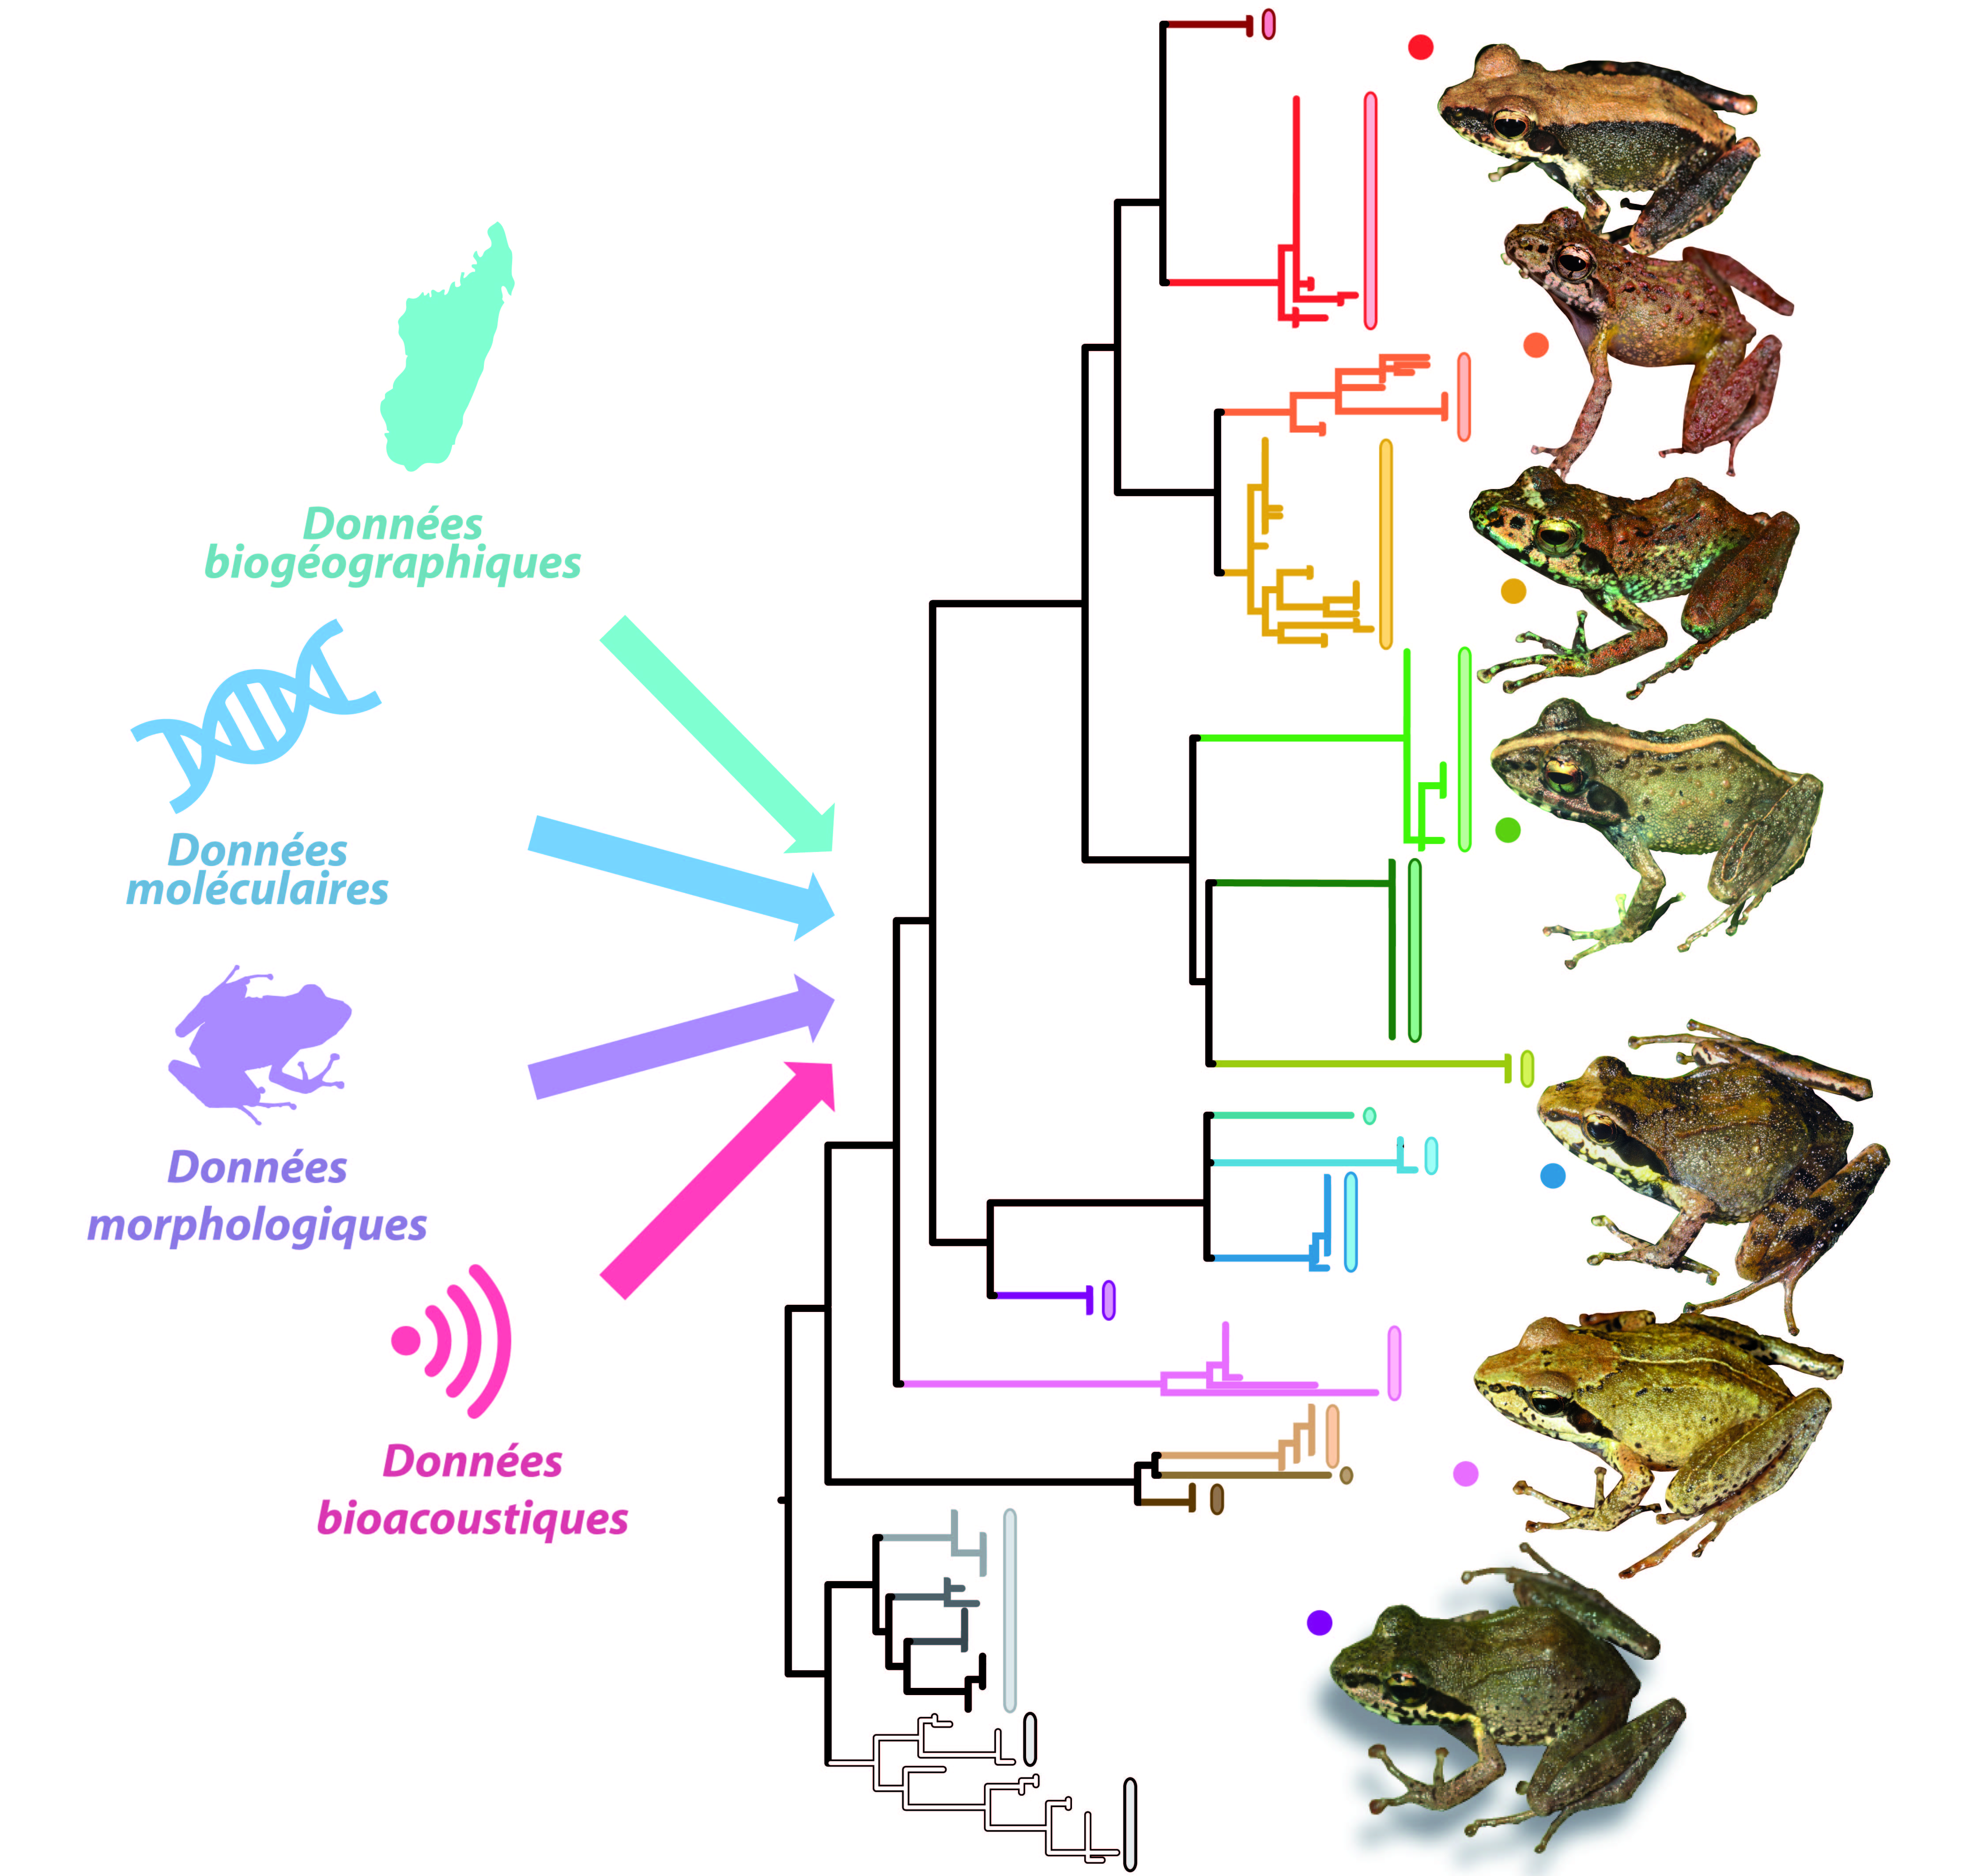 Aperçu de la diversité évolutive au sein du sous-genre Gephyromantis, et des méthodes mises en œuvre pour délimiter les espèce